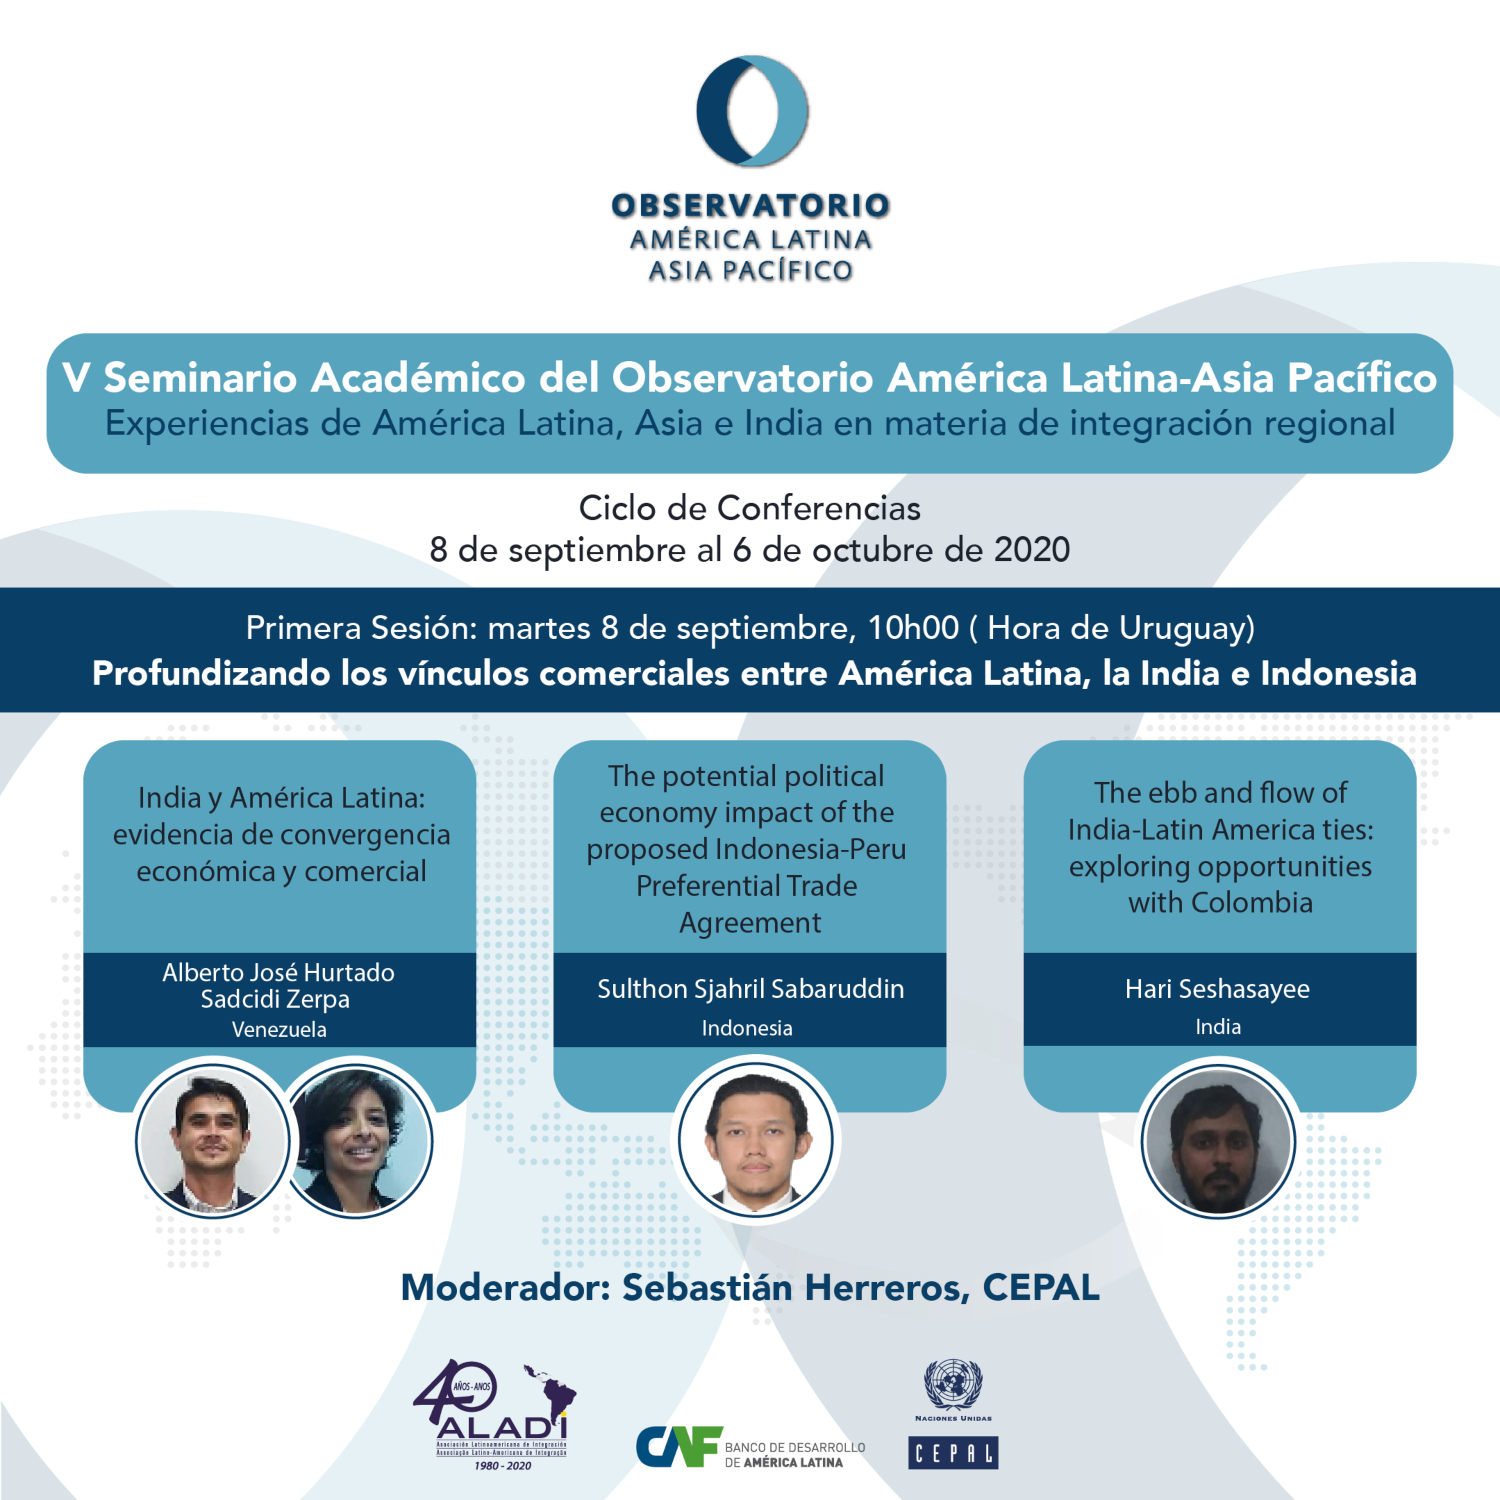 Primera Sesión : Profundizando los vínculos comerciales entre América Latina, la India e Indonesia